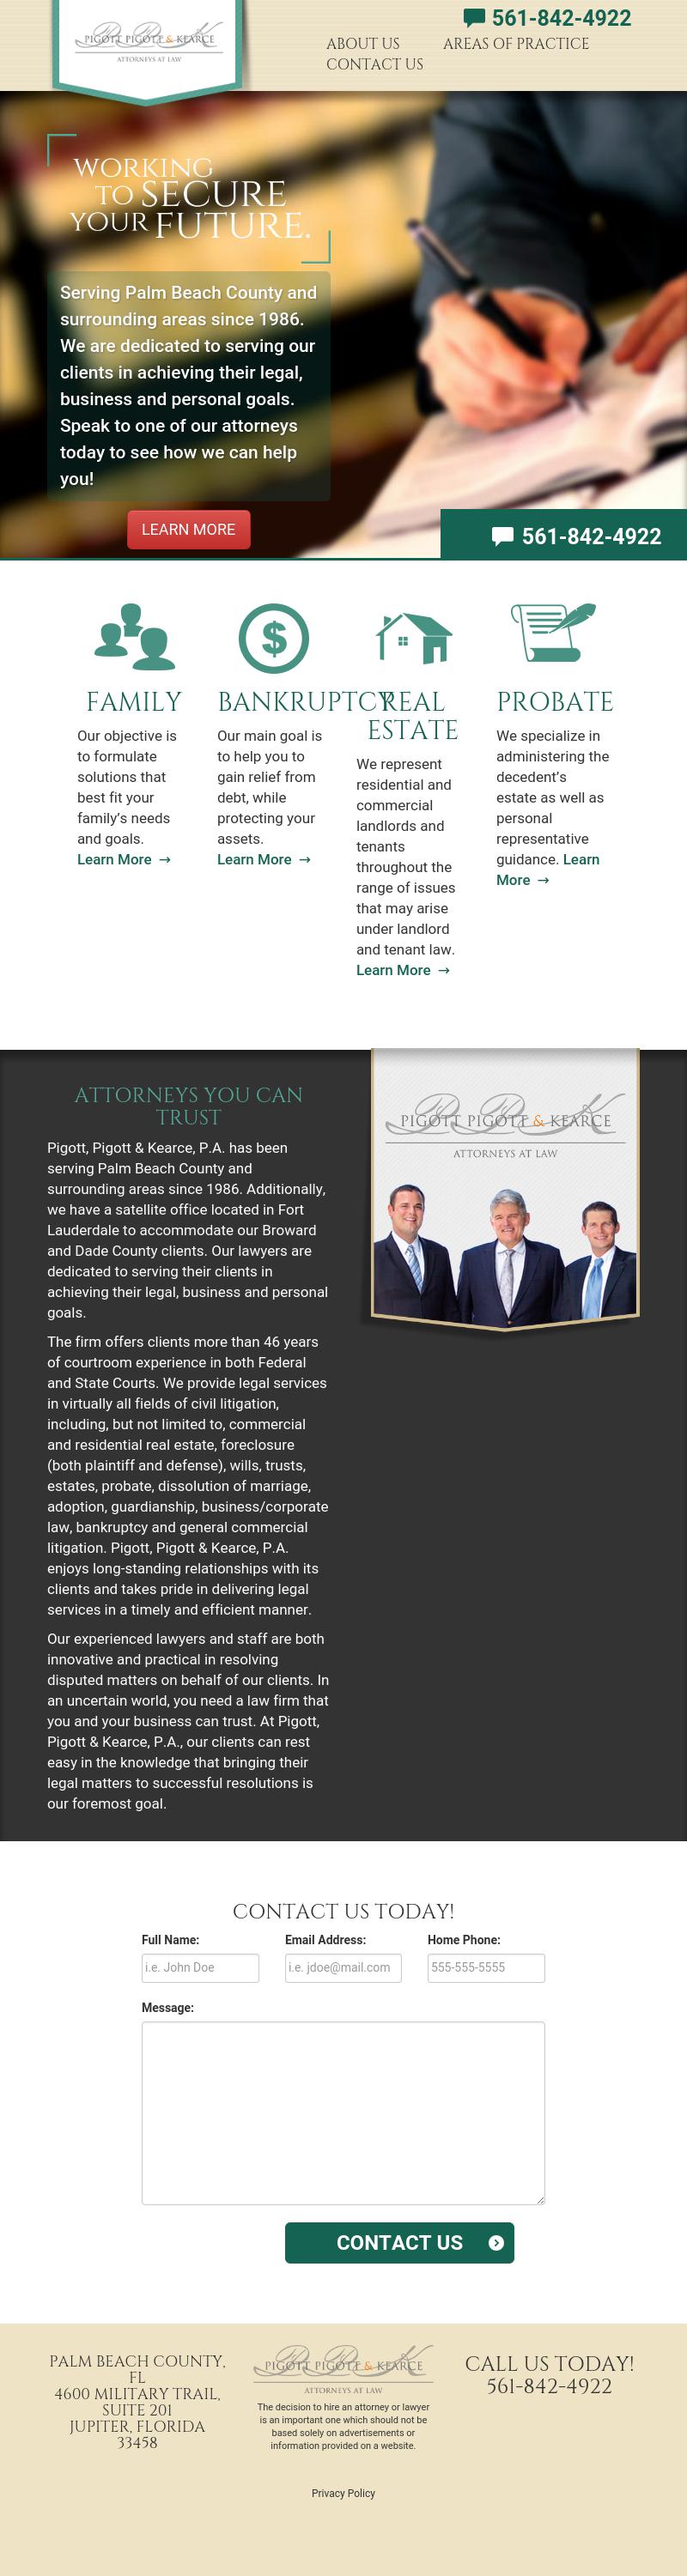 Pigott Pigott & Kearce - North Palm Beach FL Lawyers